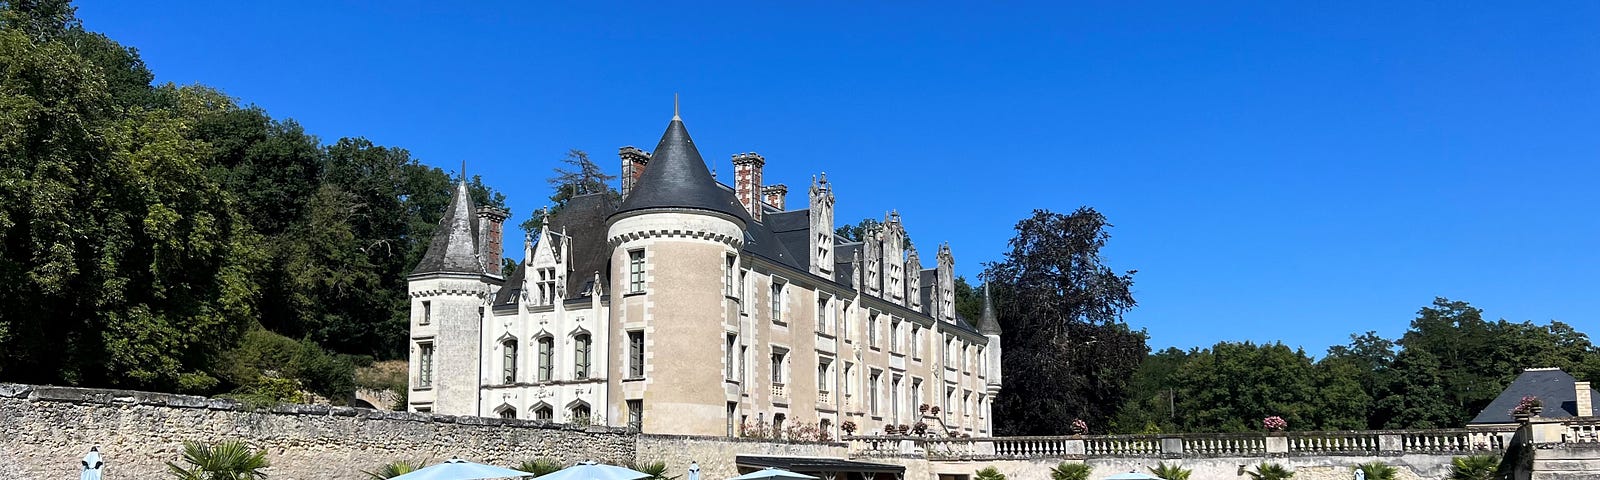 Chateau des Arpentis. Photo by Author